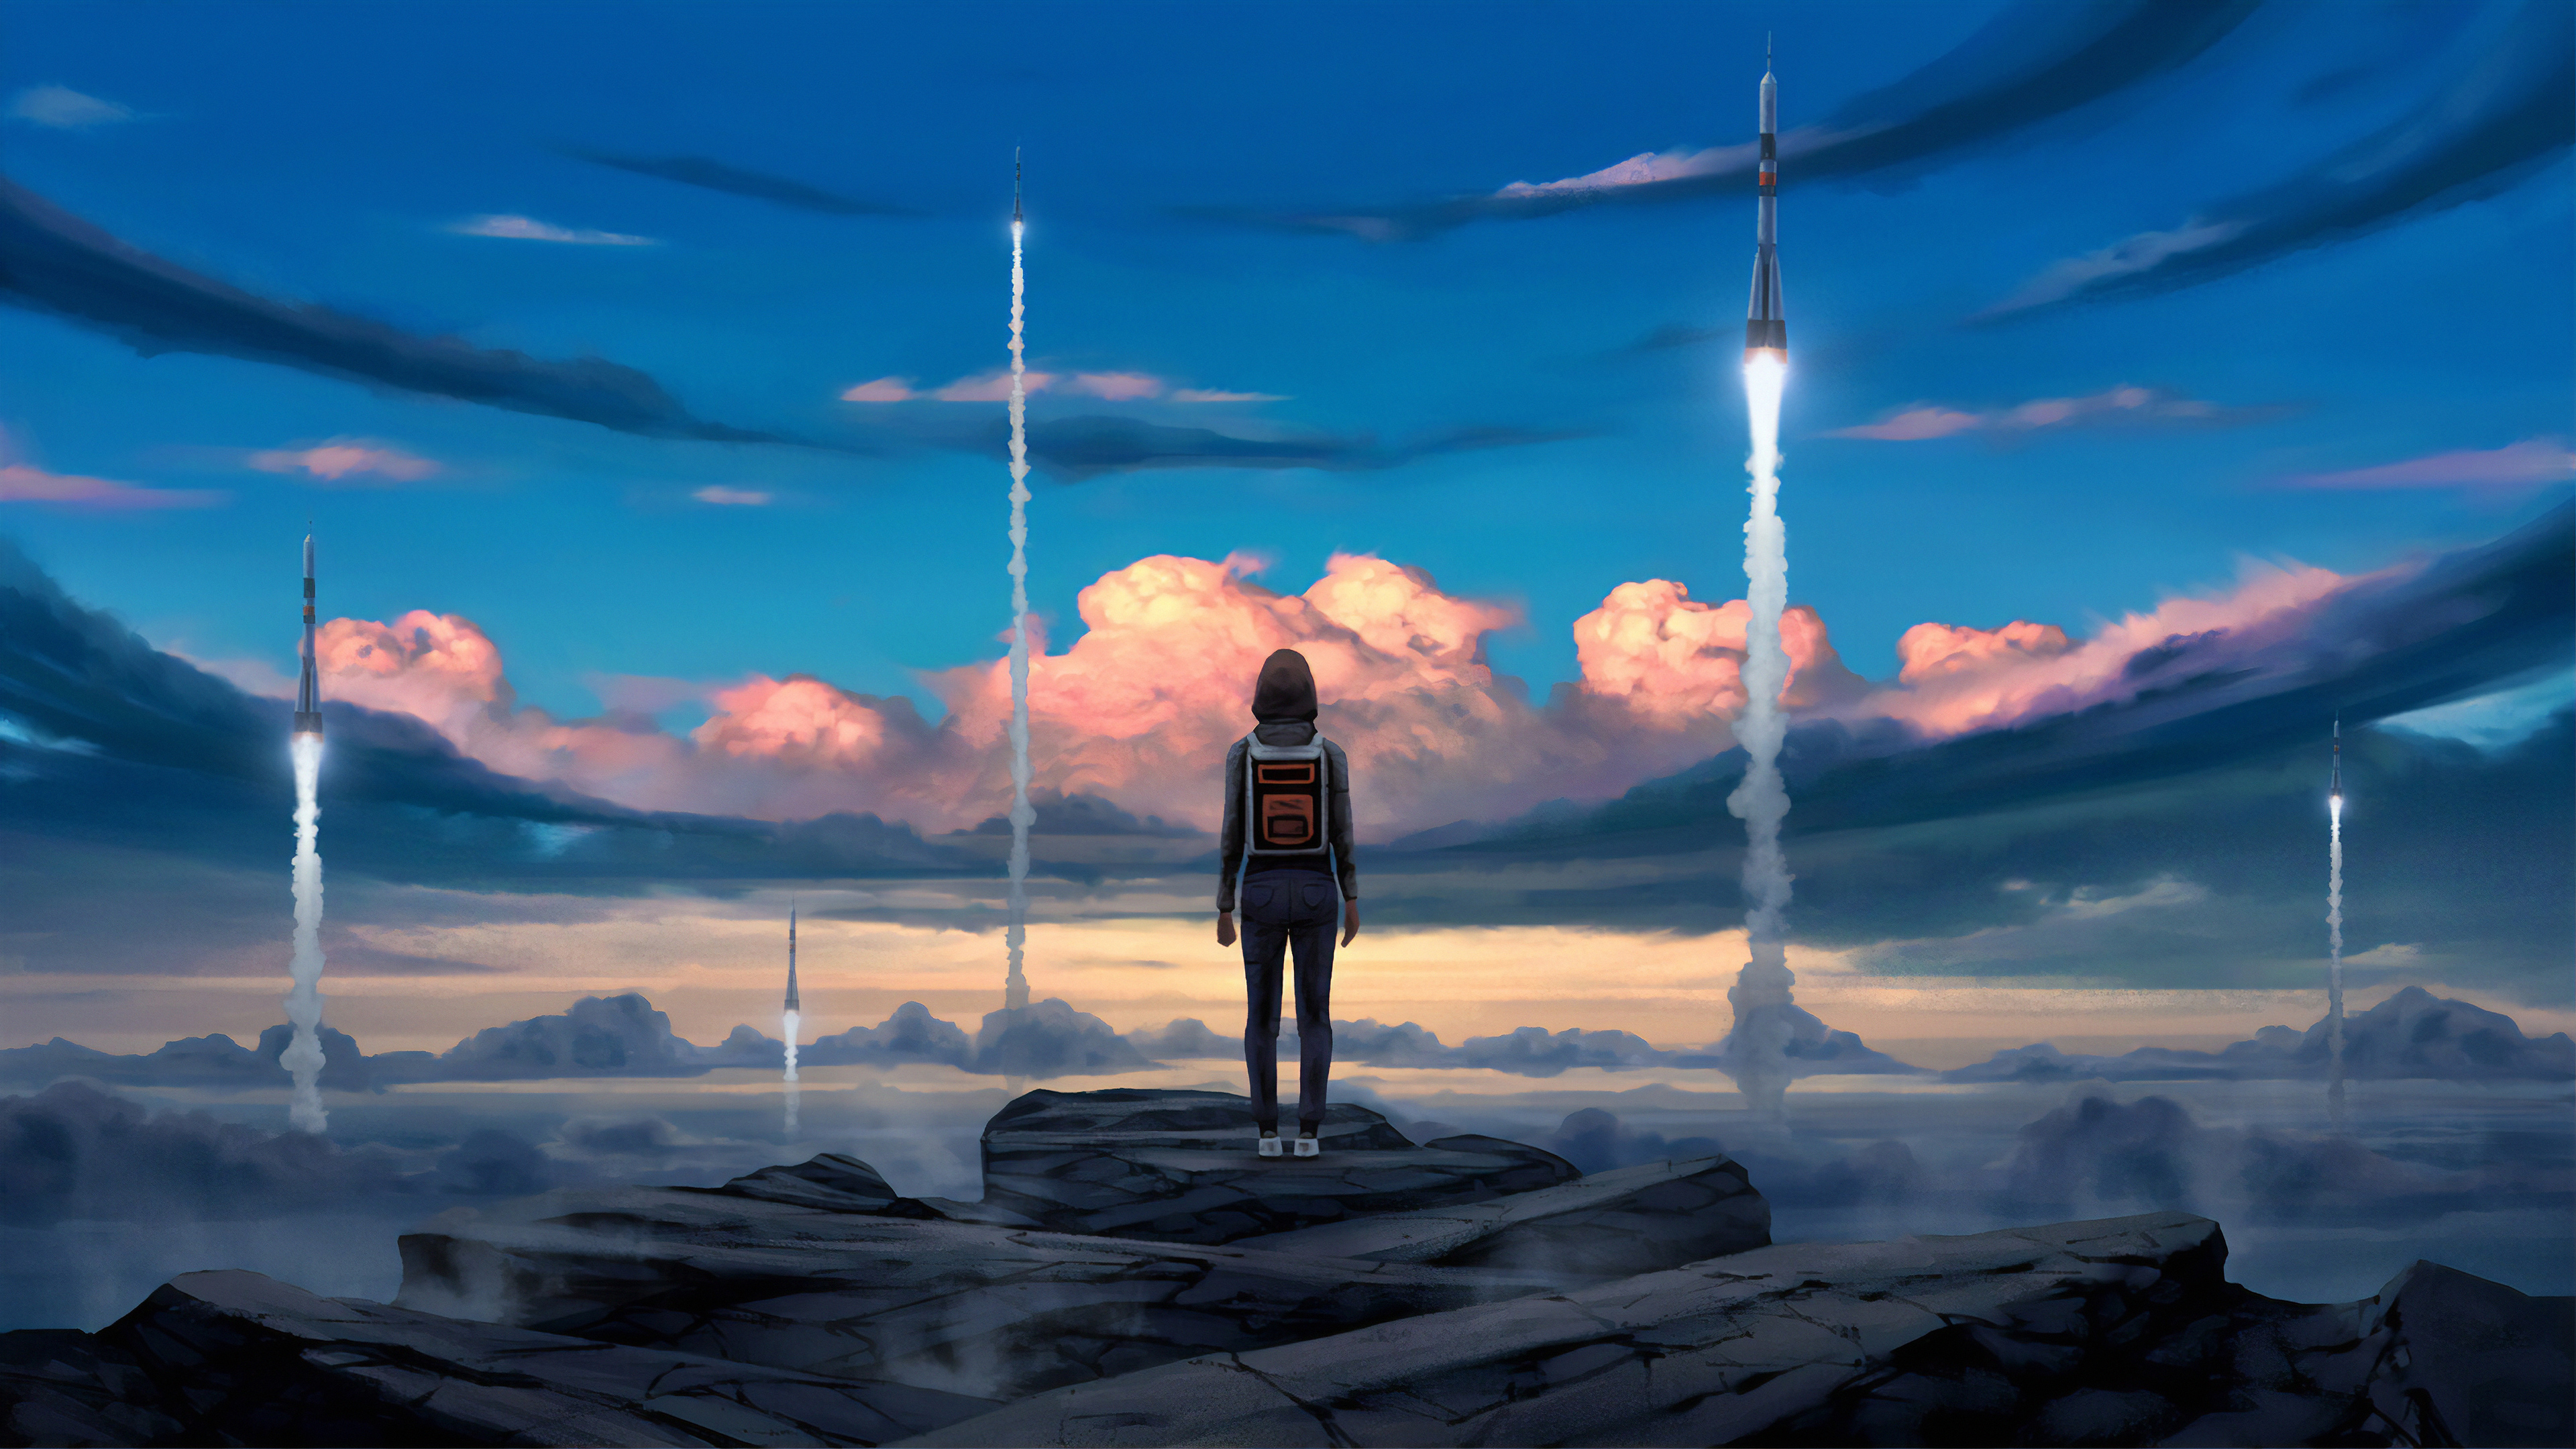 Free download wallpaper Landscape, Sky, Rocket, Sci Fi, Cloud, Women on your PC desktop